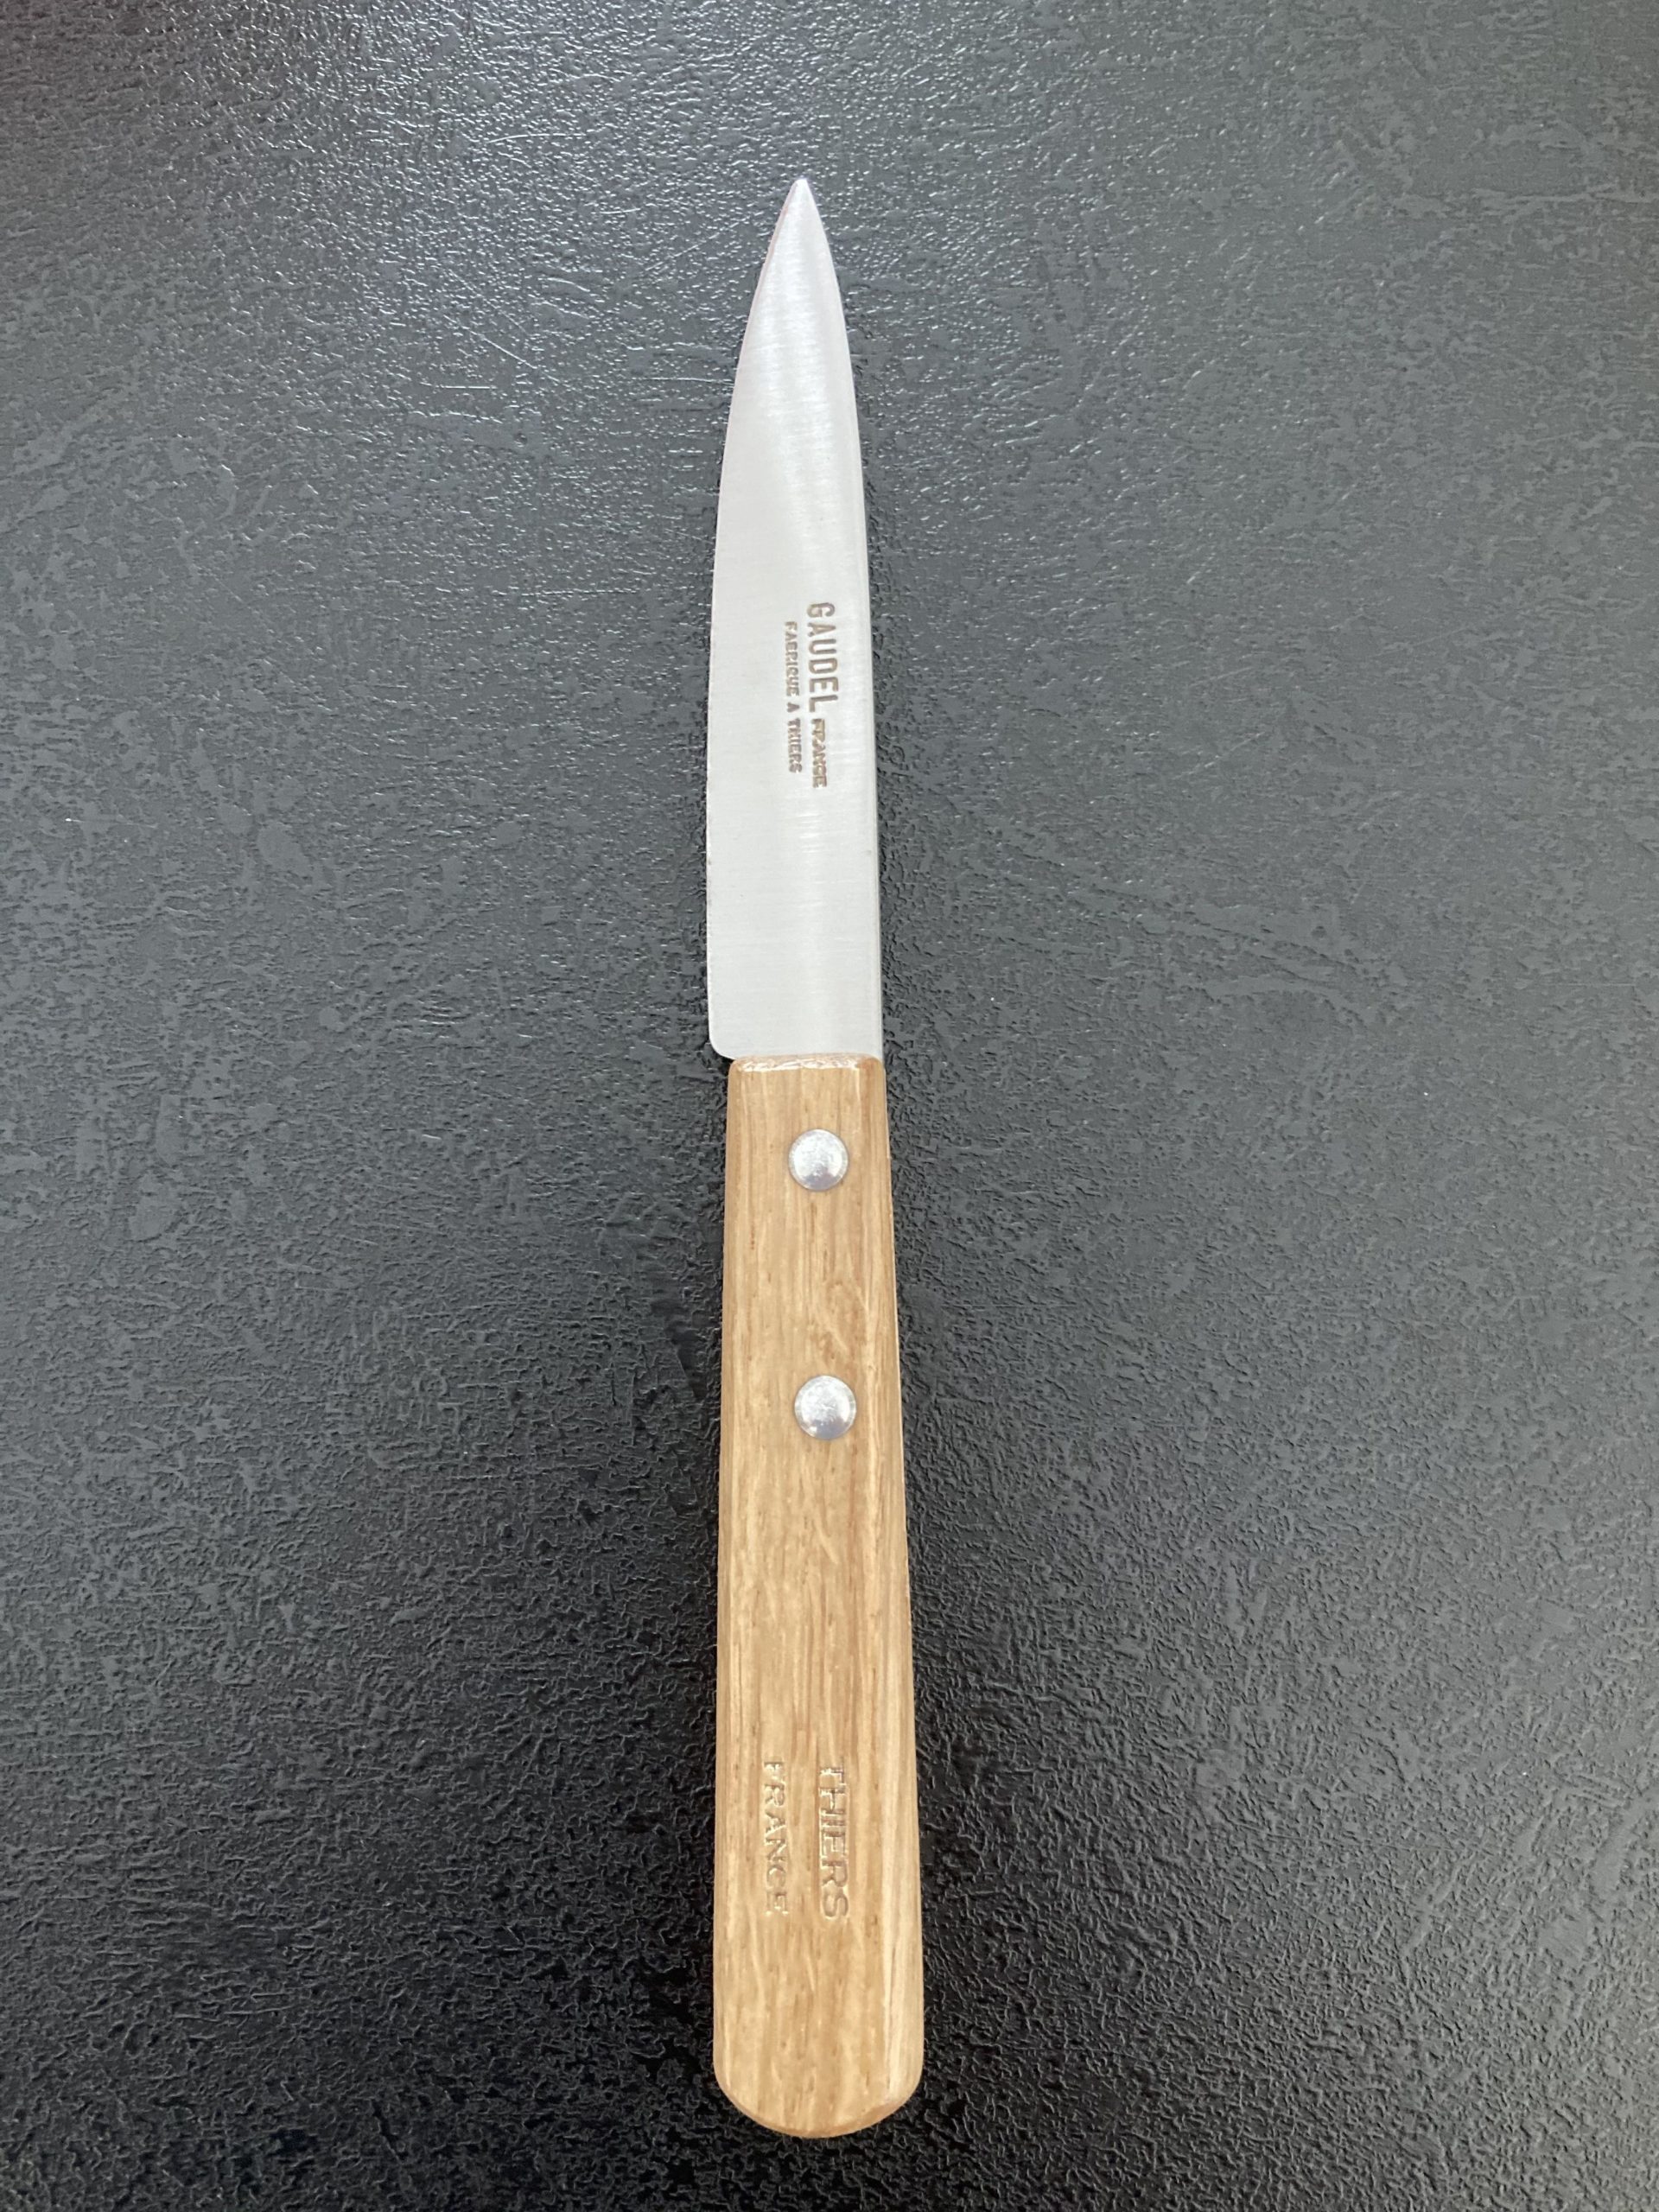 Couteau d'office 10 cm - Burdis